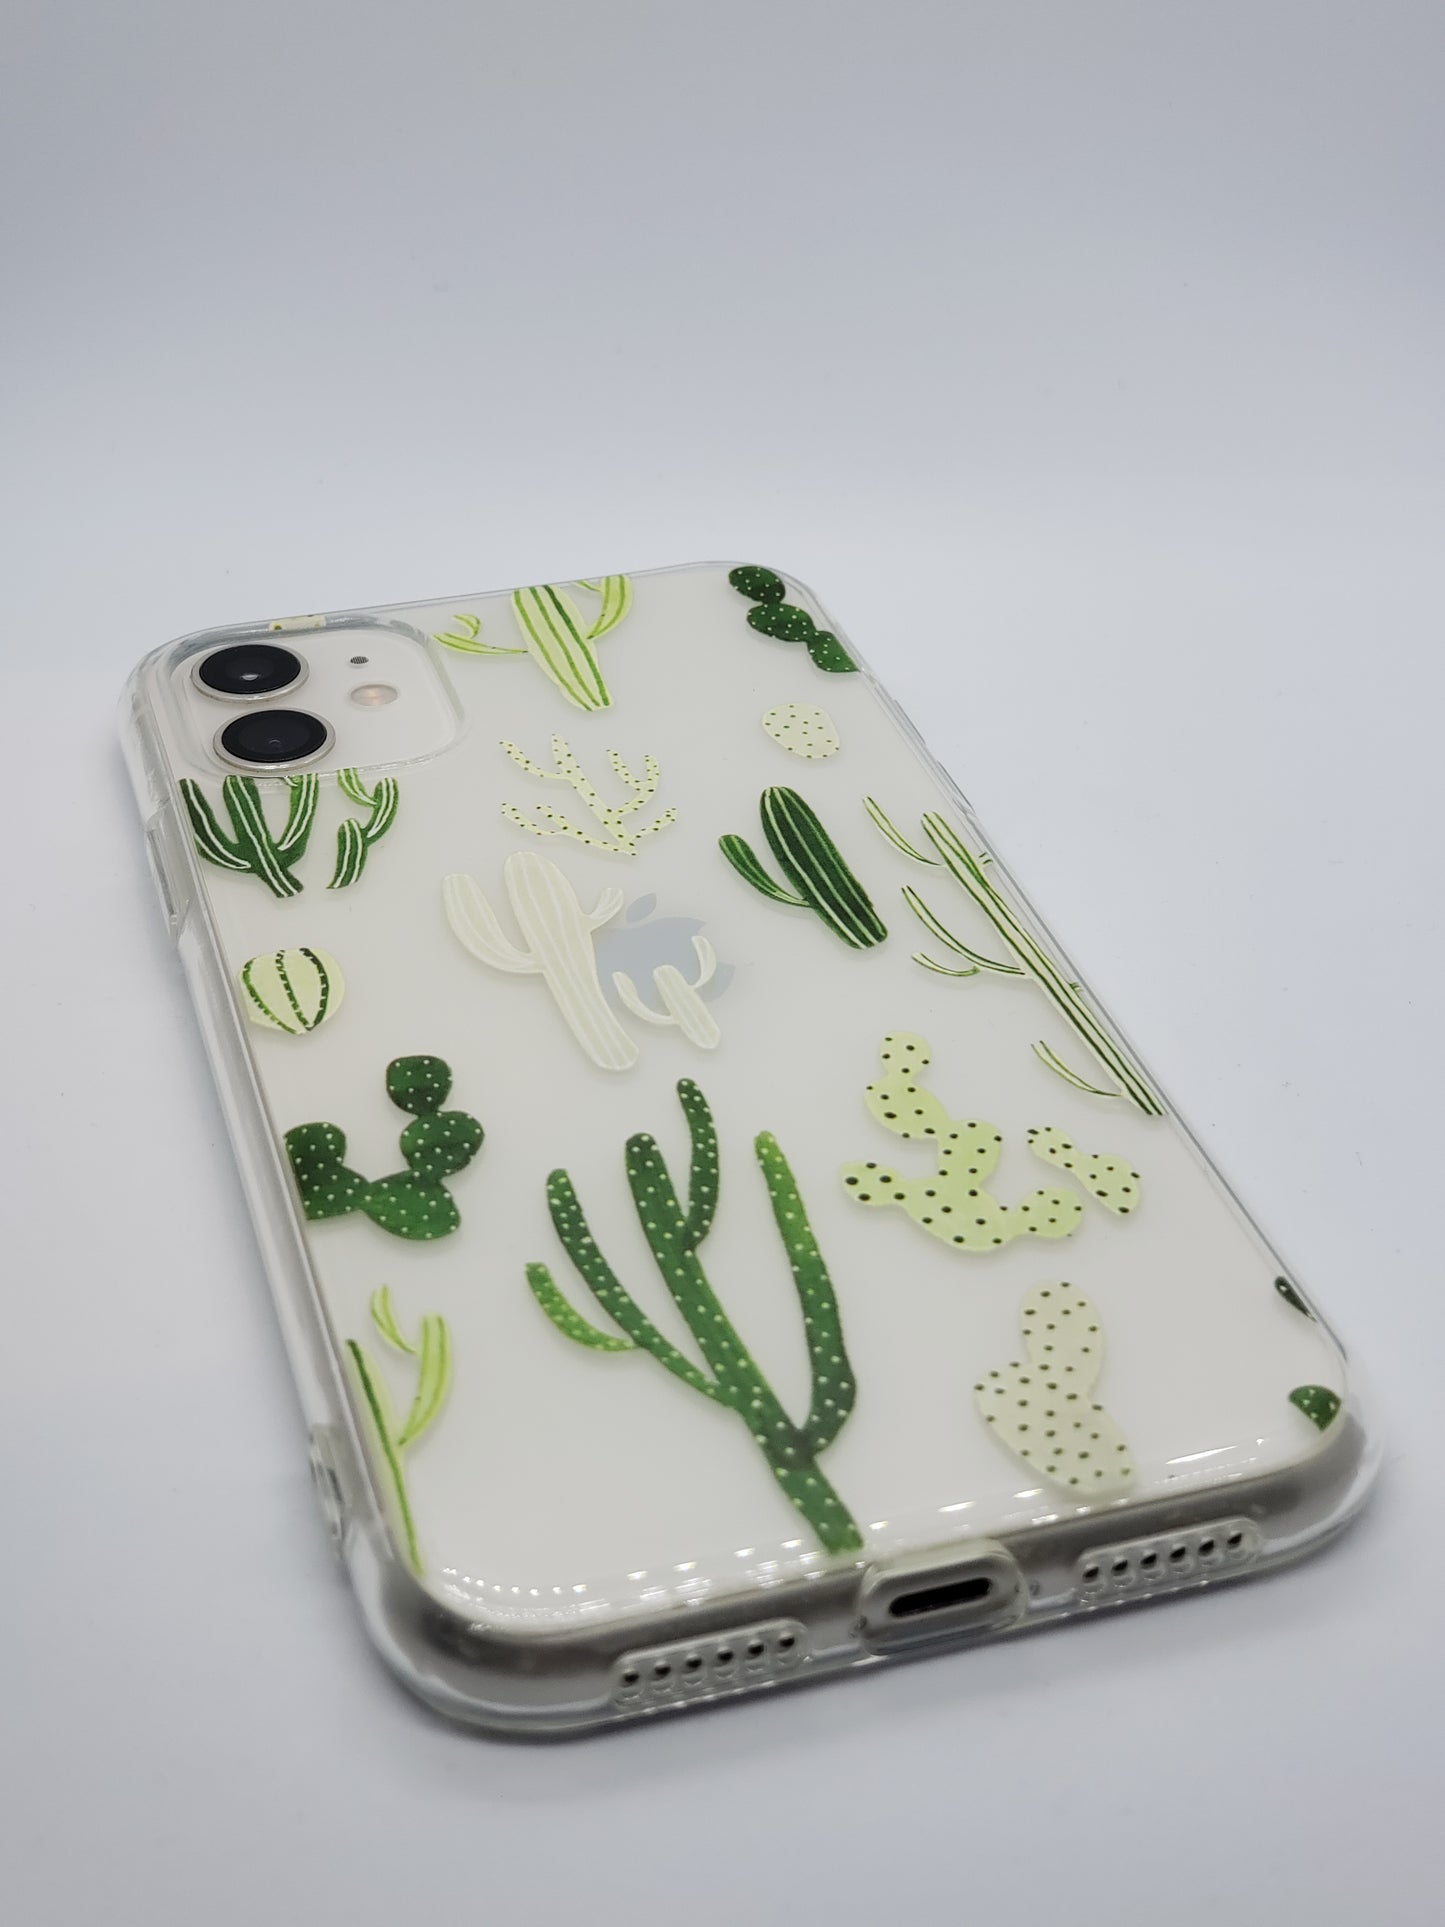 Cactus Transparent Clear iPhone Case